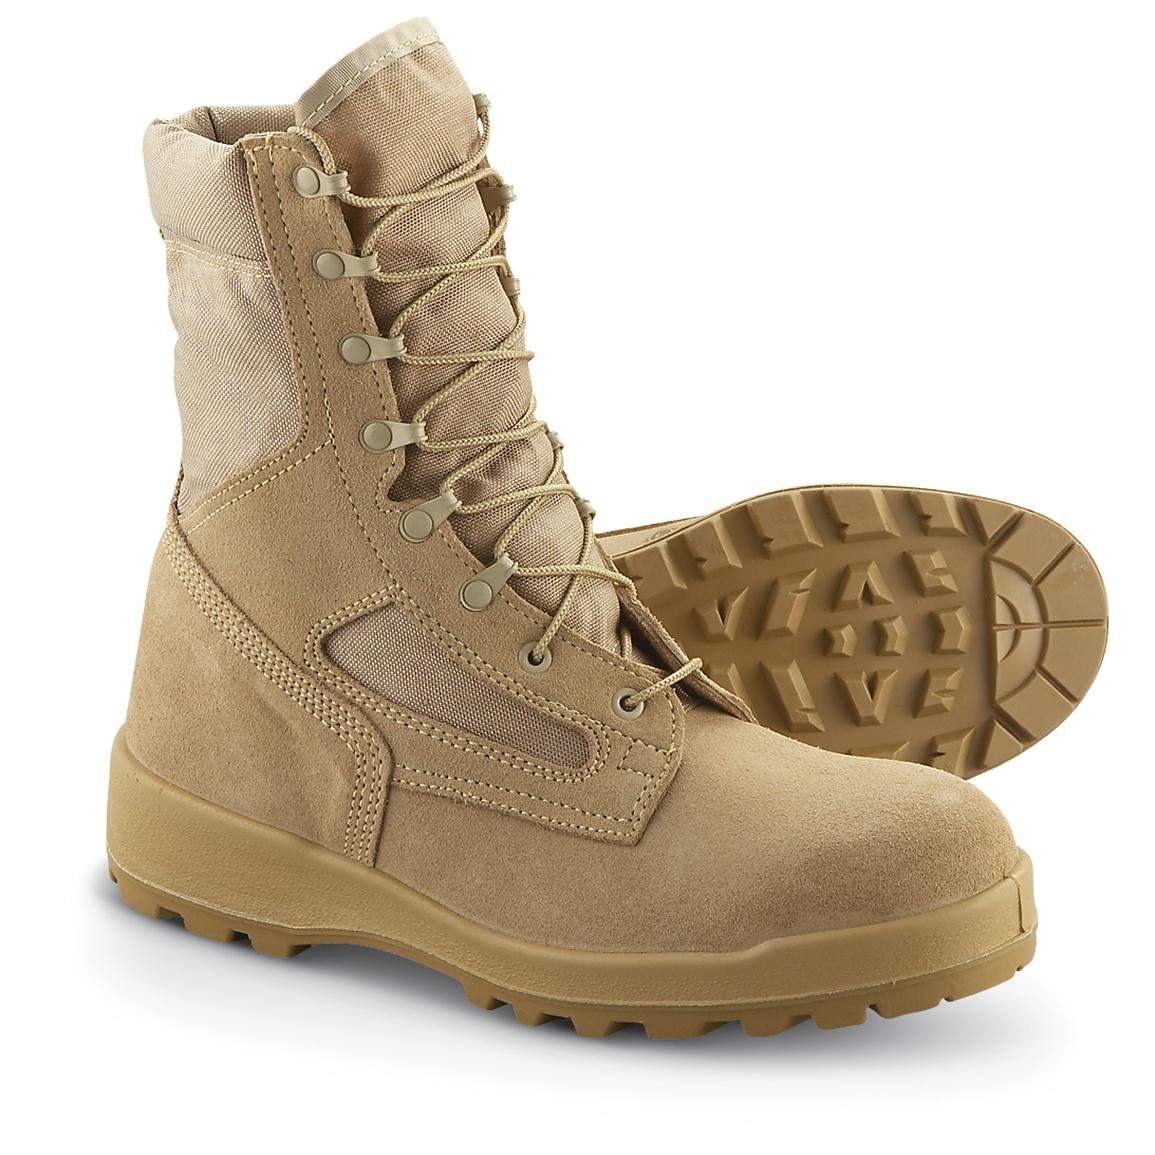 Men's Wellco® V - Trax® Desert Boots, Tan - 205765, Tactical Boots at ...